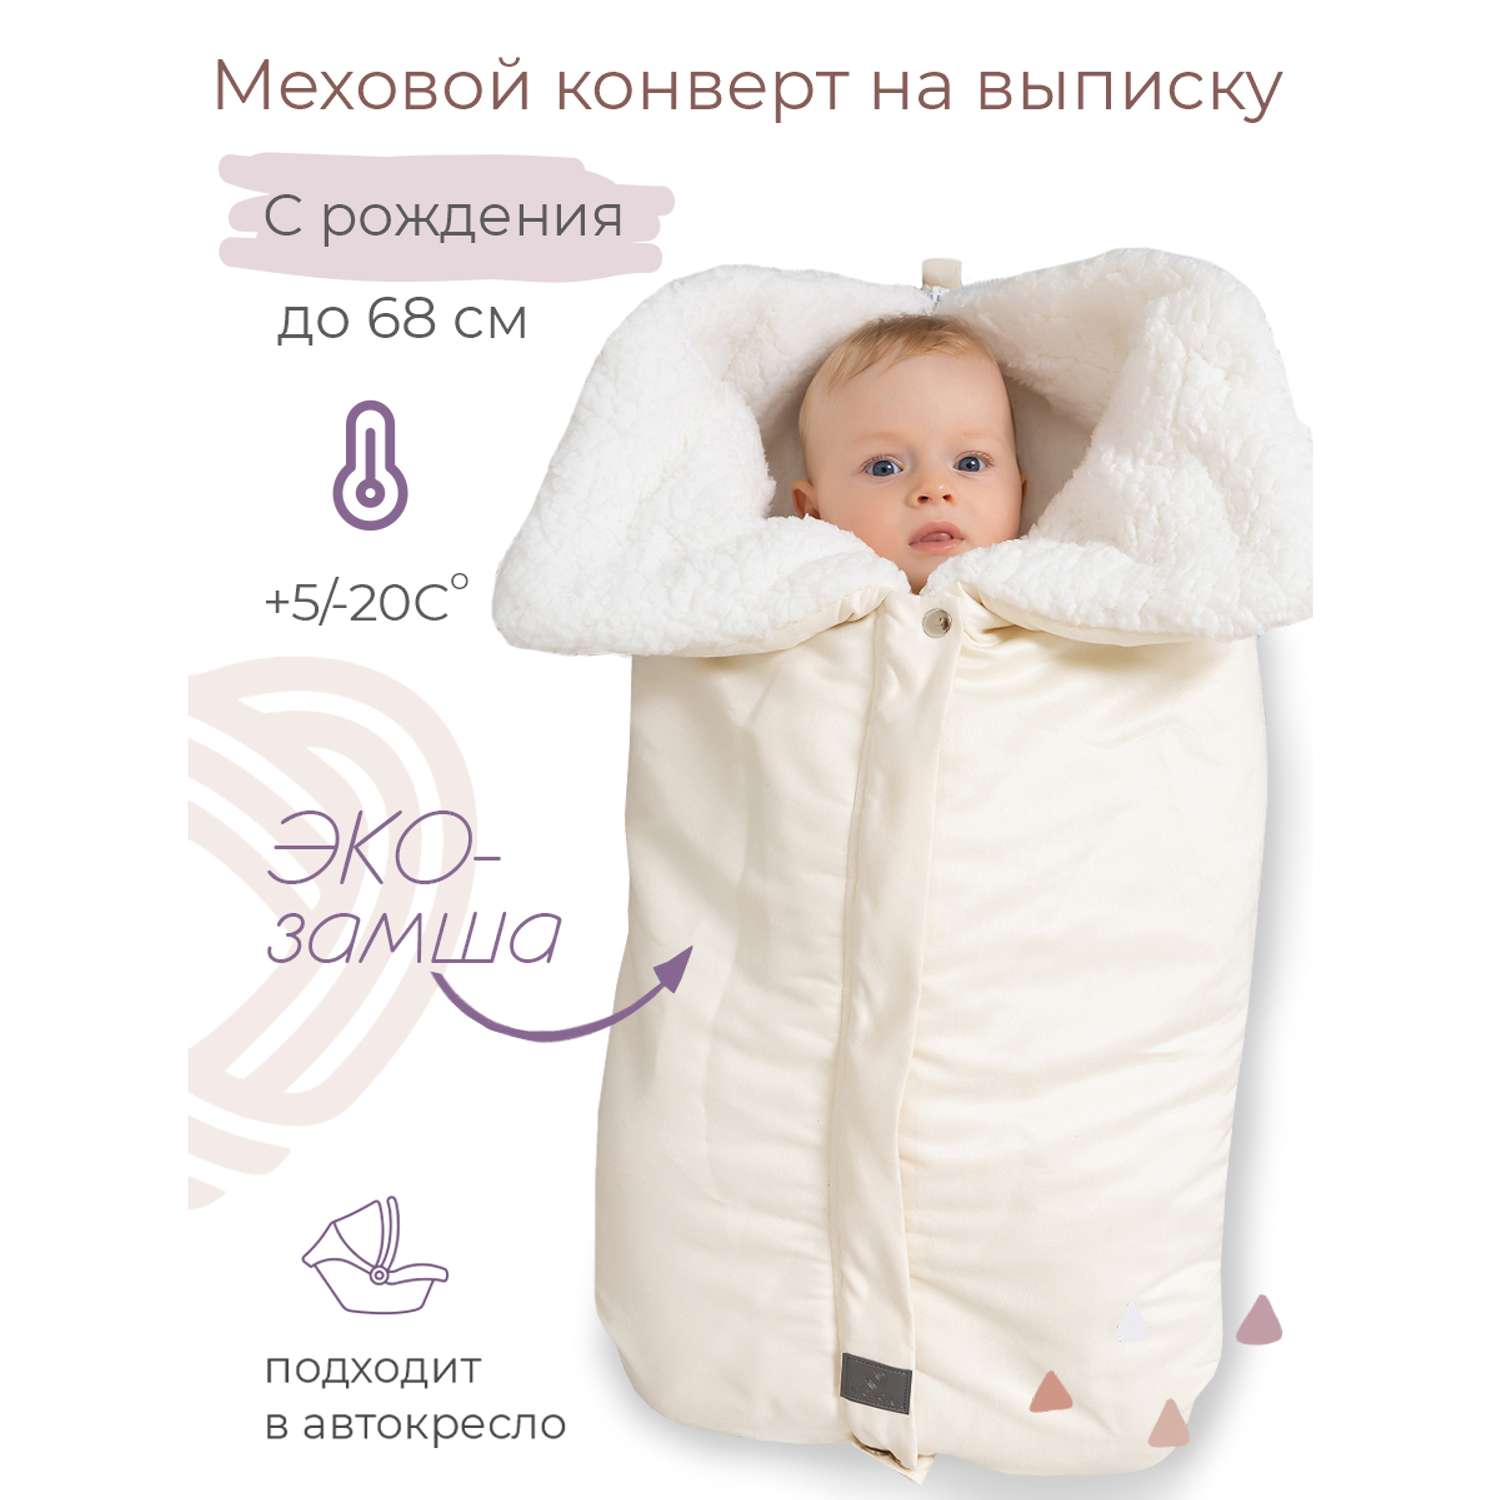 Конверт в коляску inlovery для новорожденного «Нортес» молочный - фото 1